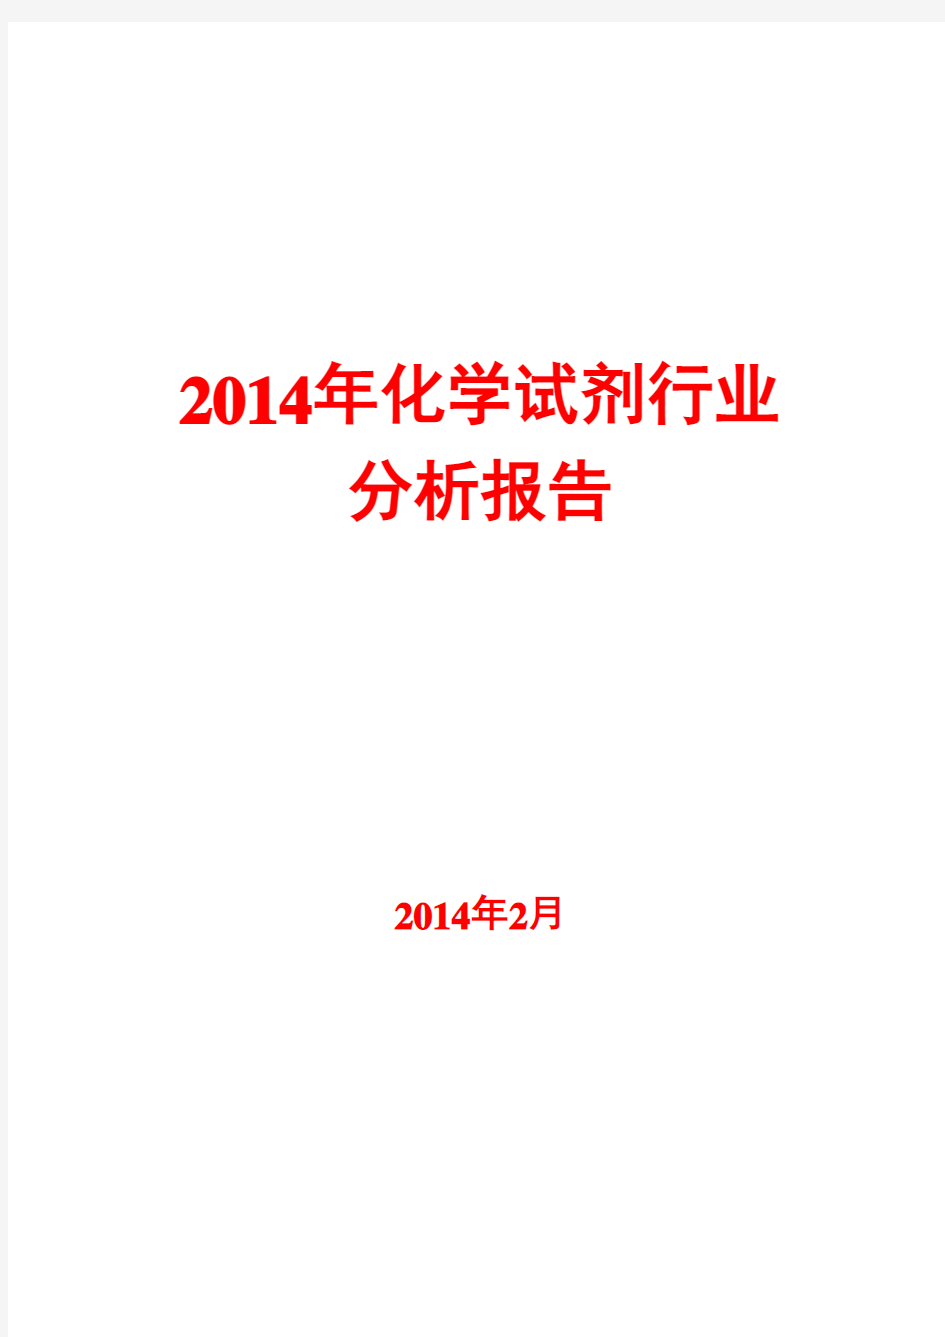 2014年化学试剂行业分析报告